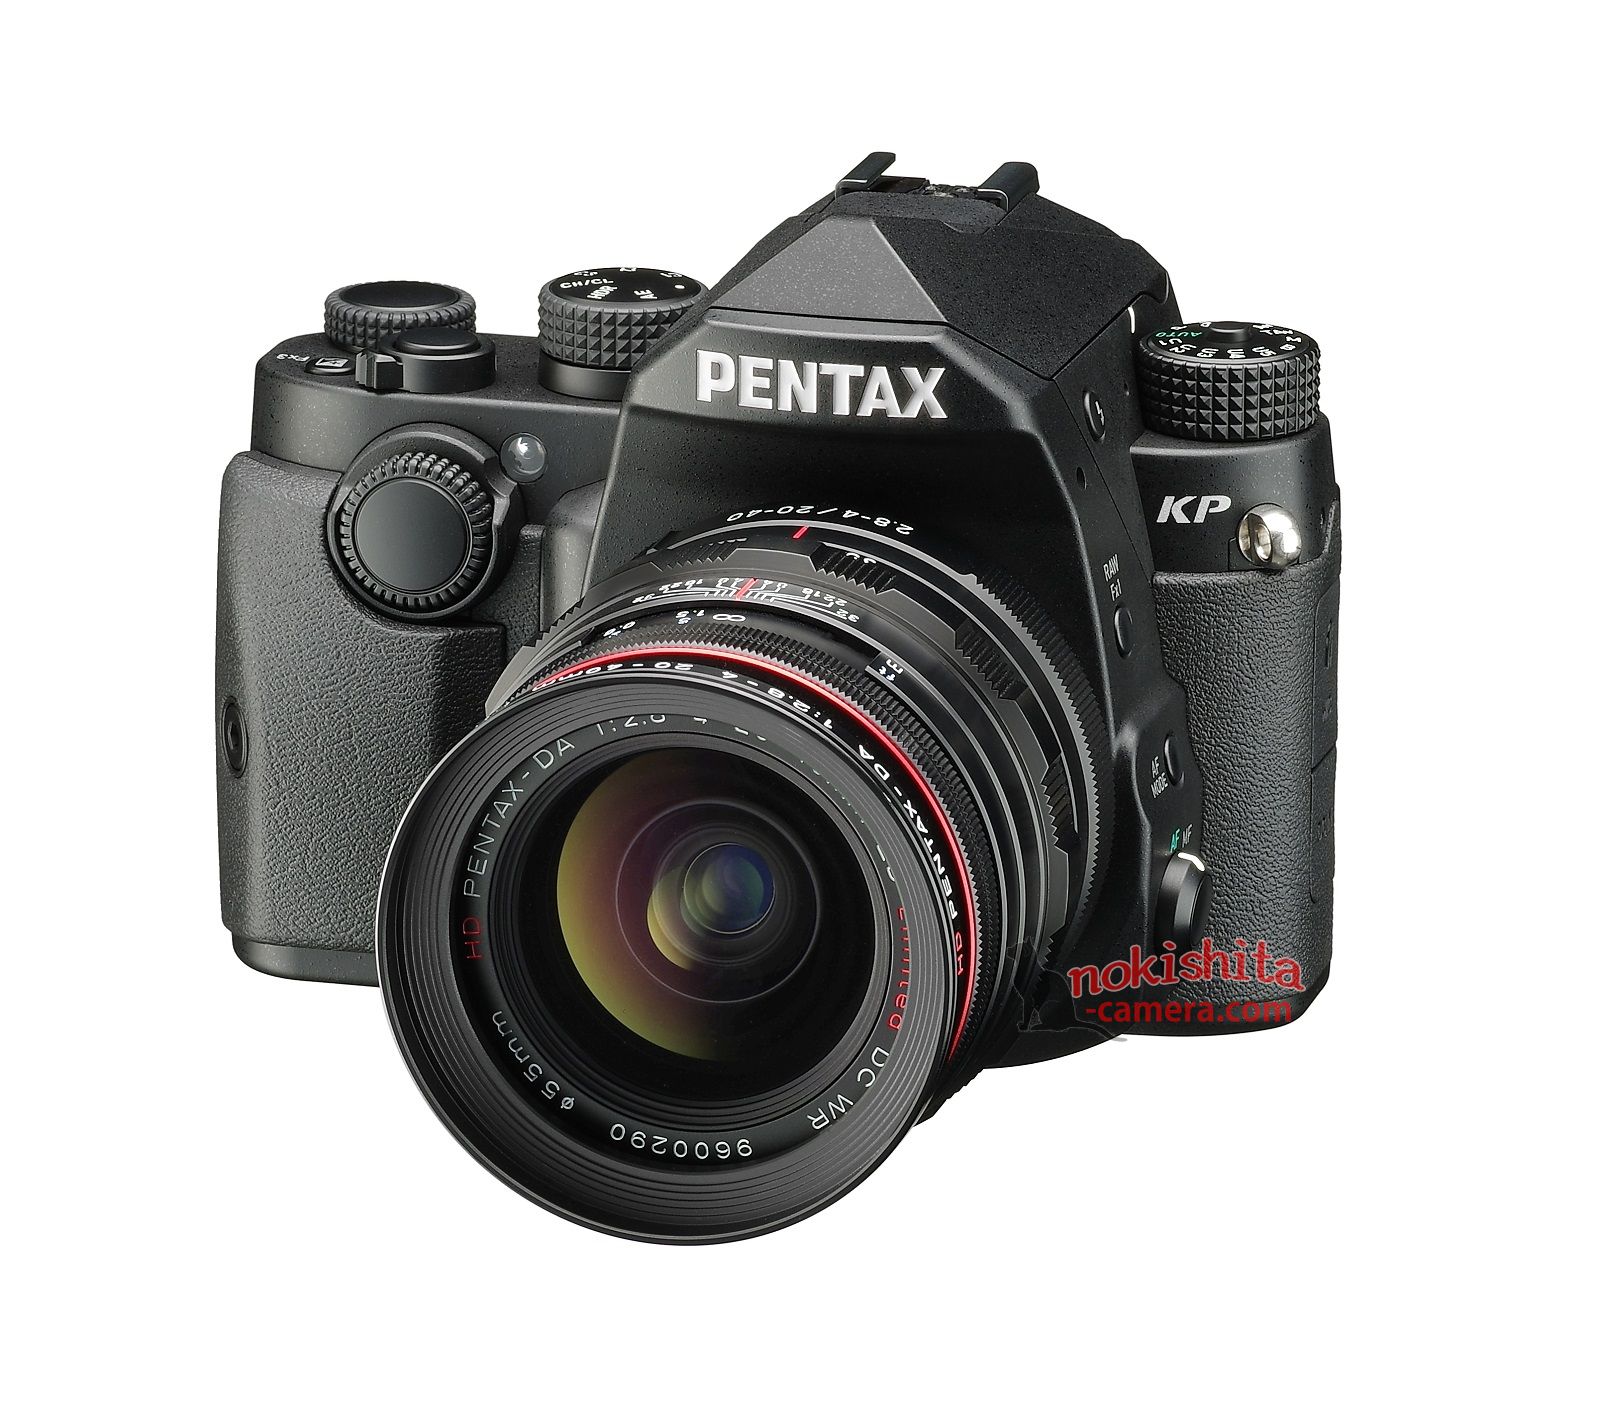 Pentax KP camera specifications | Pentax Rumors